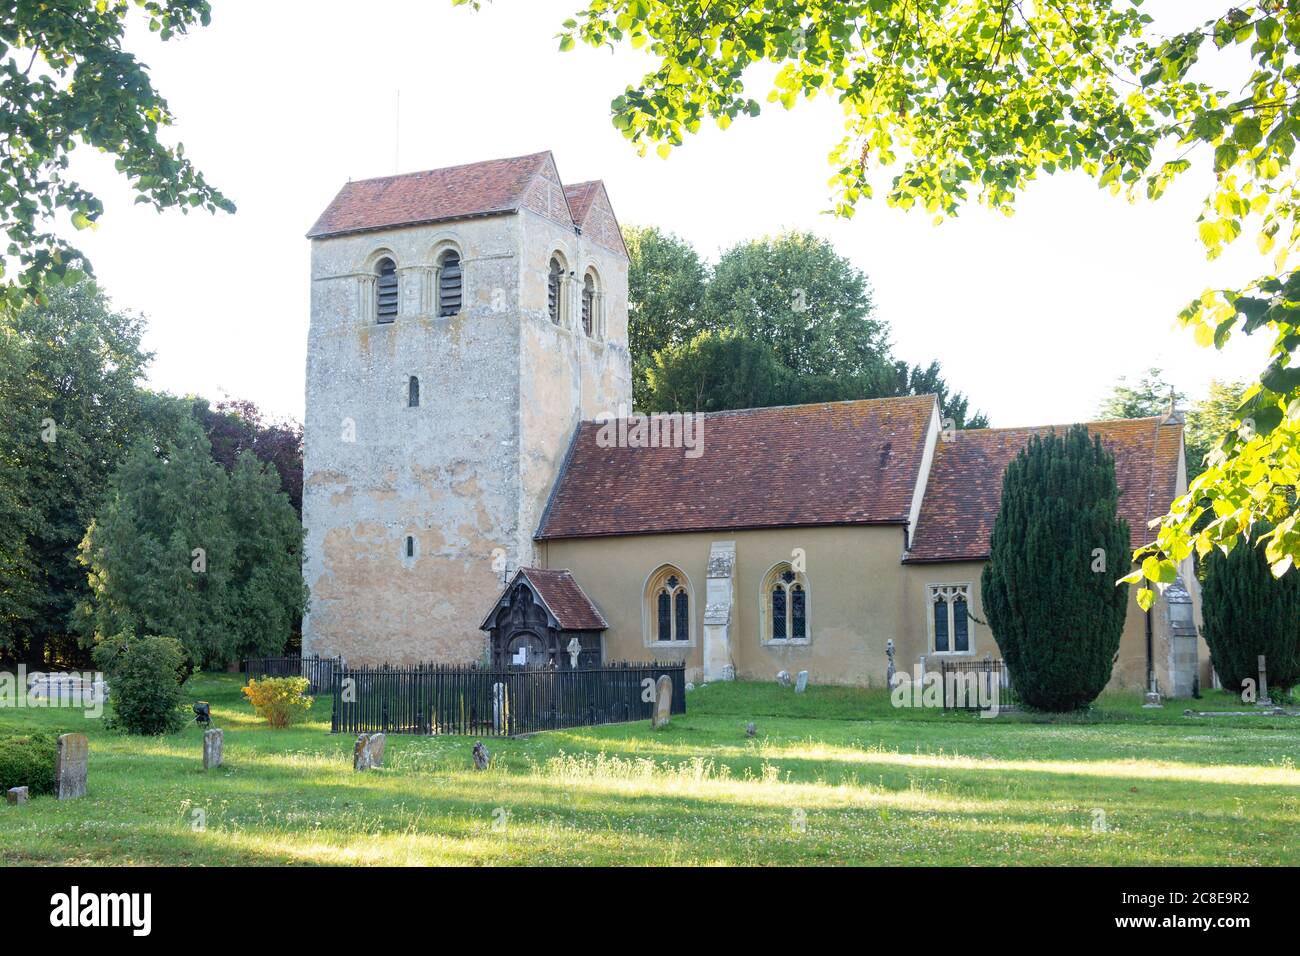 St Bartholomew Church, Chequers lane, Fingest, Buckinghamshire, England, United Kingdom Stock Photo